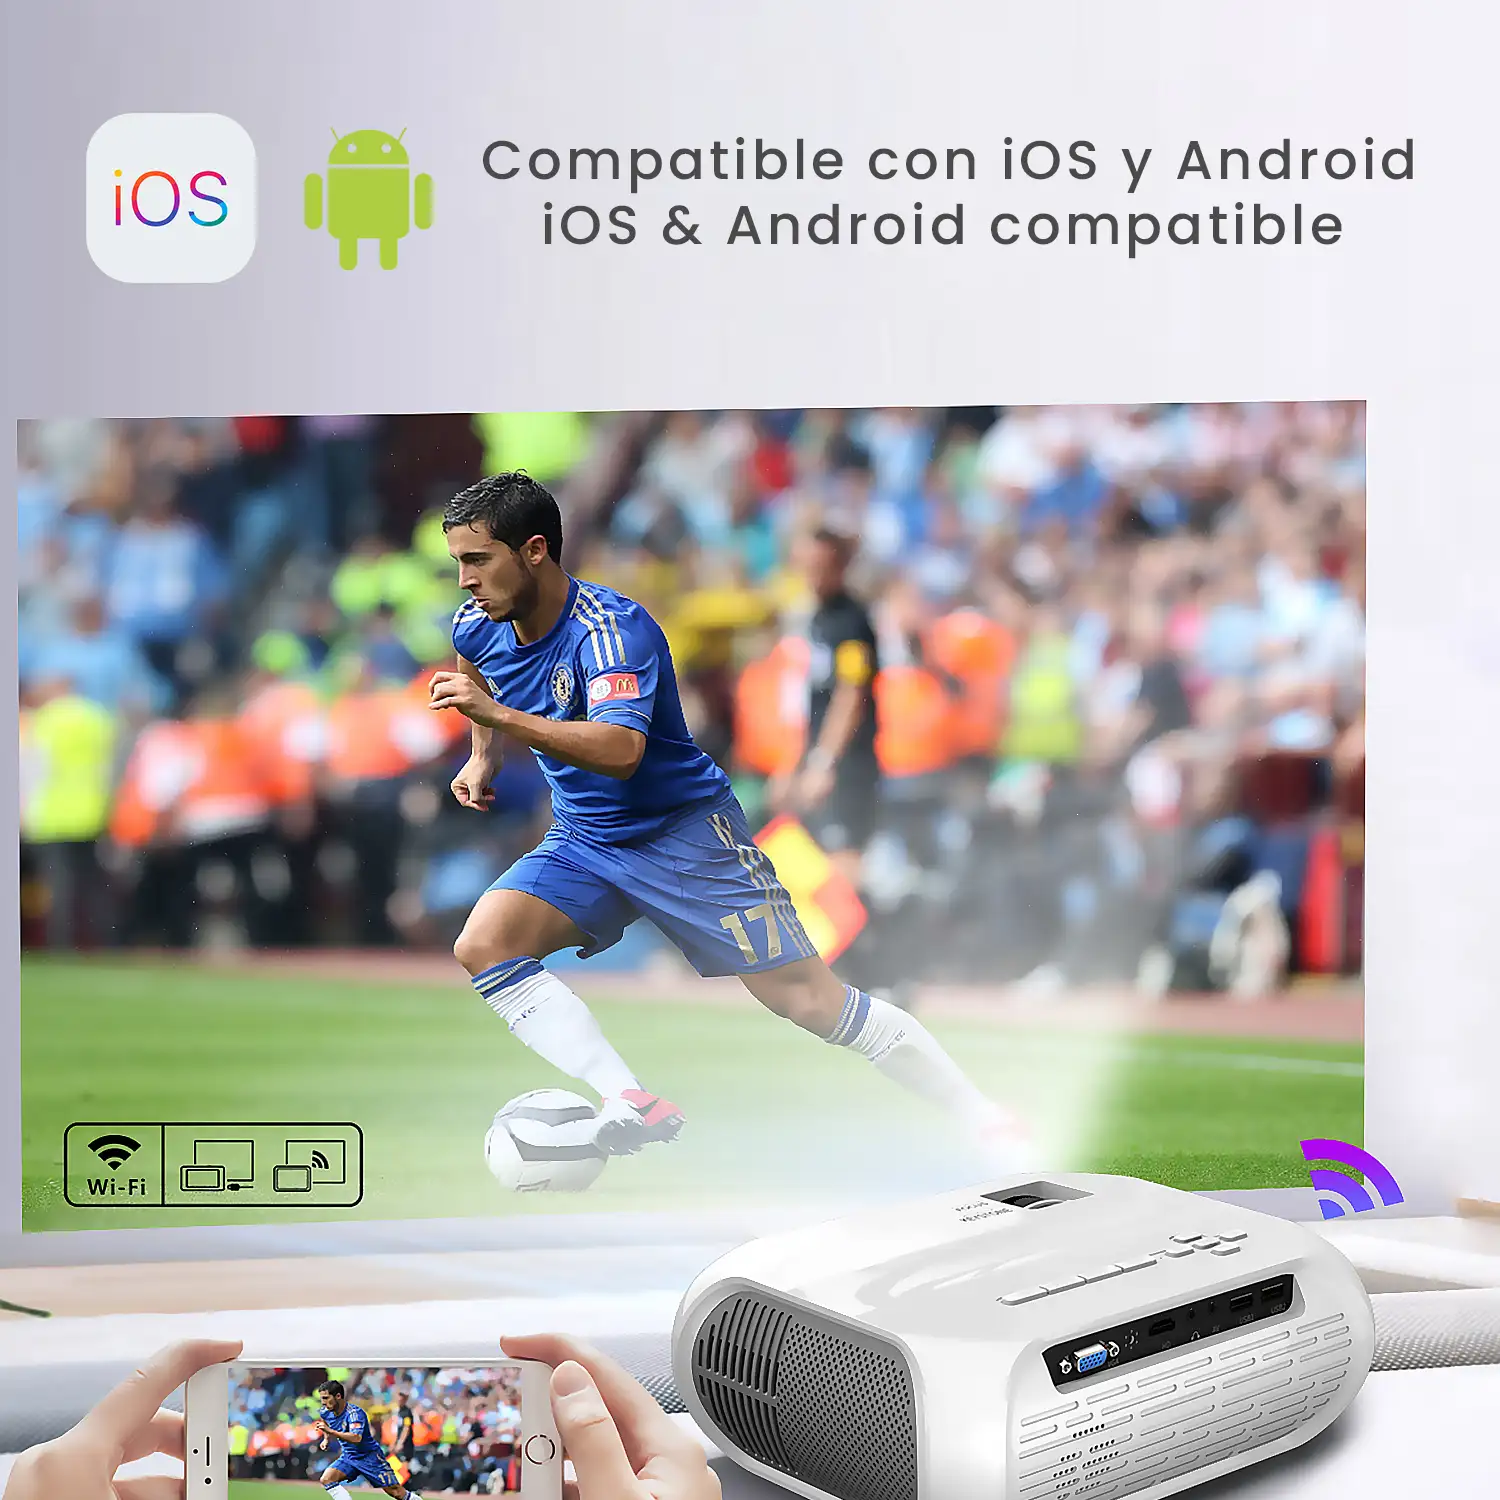 Proyector LCD T9 Wifi, FHD1080, duplicación de pantalla para iOS y Android. Conexión USB, HDMI y AV. De 40 a 140 pulgadas, 1800 lm. Con mando a distancia.